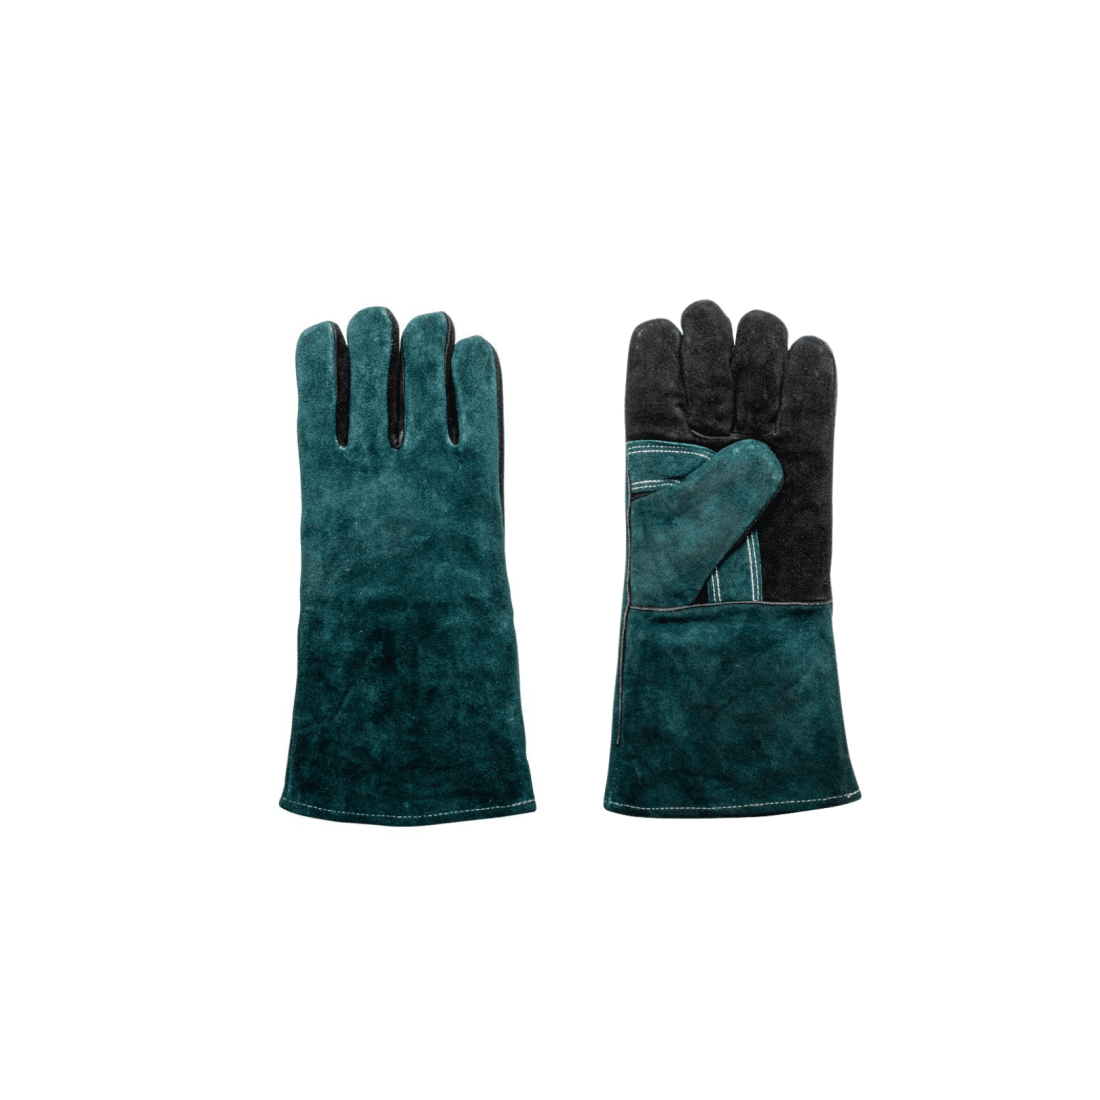 Protégez vos mains lorsque vous faites un barbecue grâce à ces gants de barbecue résistants.